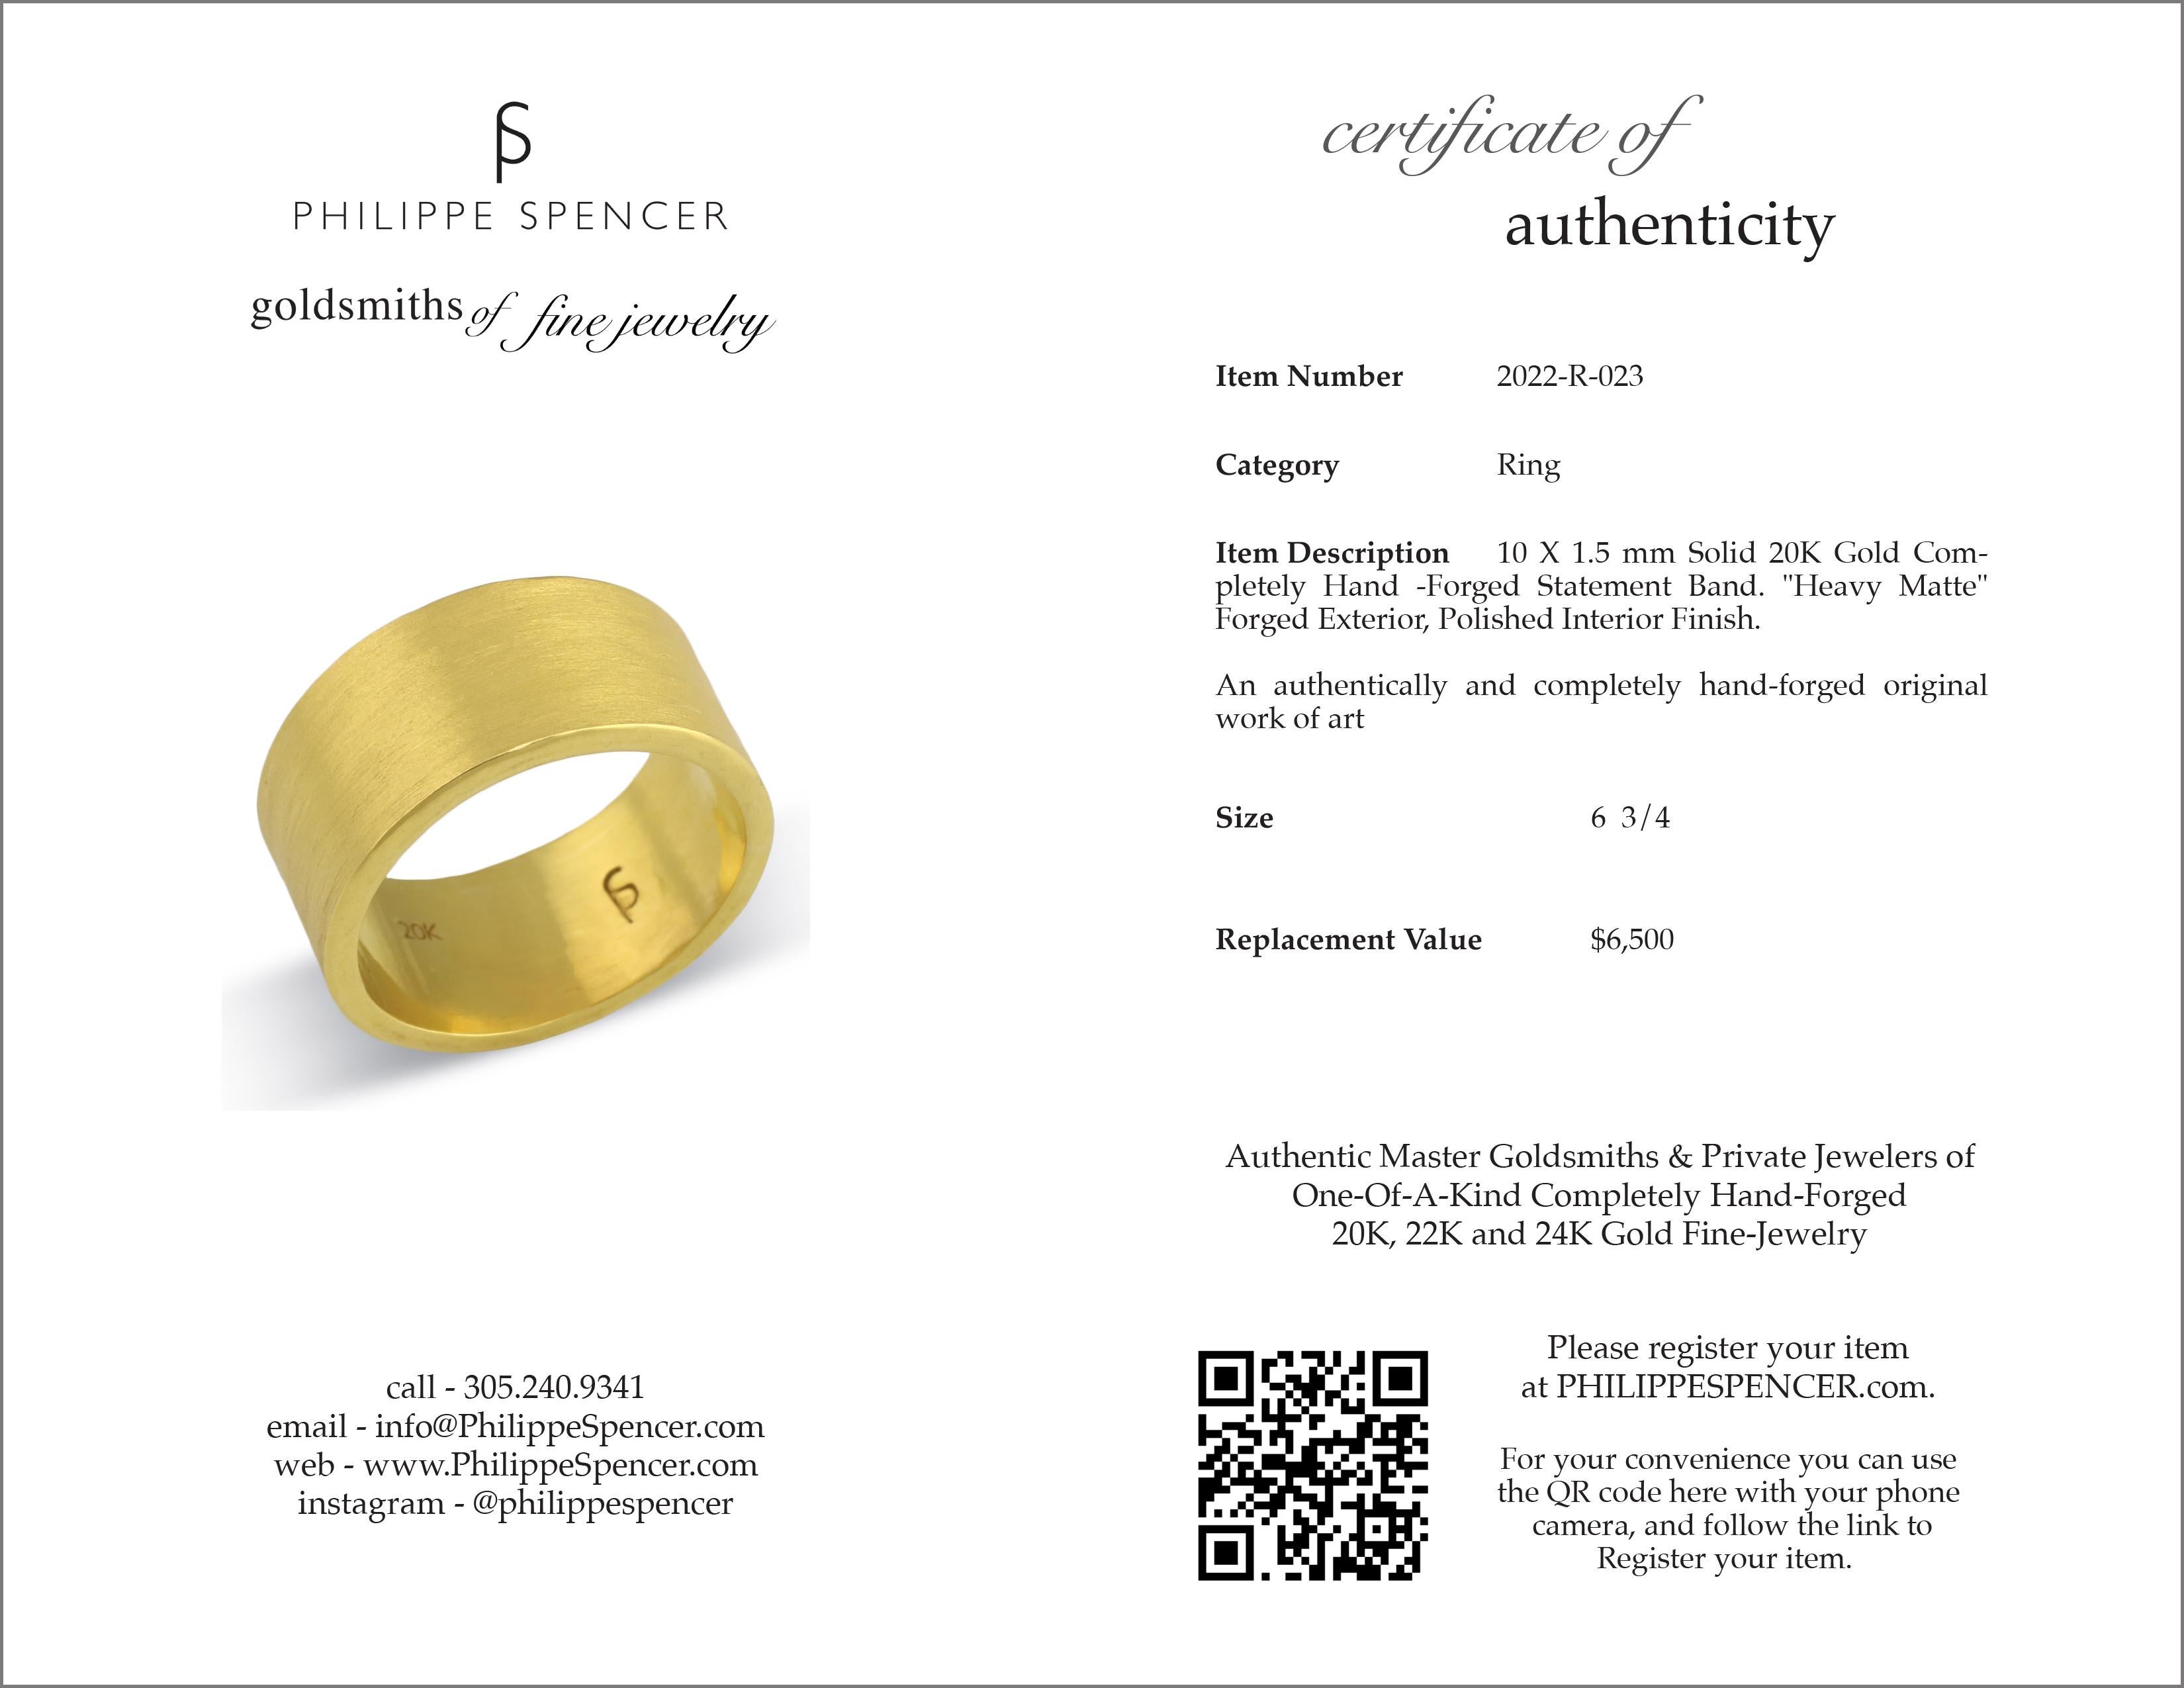 En vente :  PHILIPPE SPENCER, bague à anneau large en or 20 carats forgée à la main et à l'envil, de 10 x 1,5 mm 4